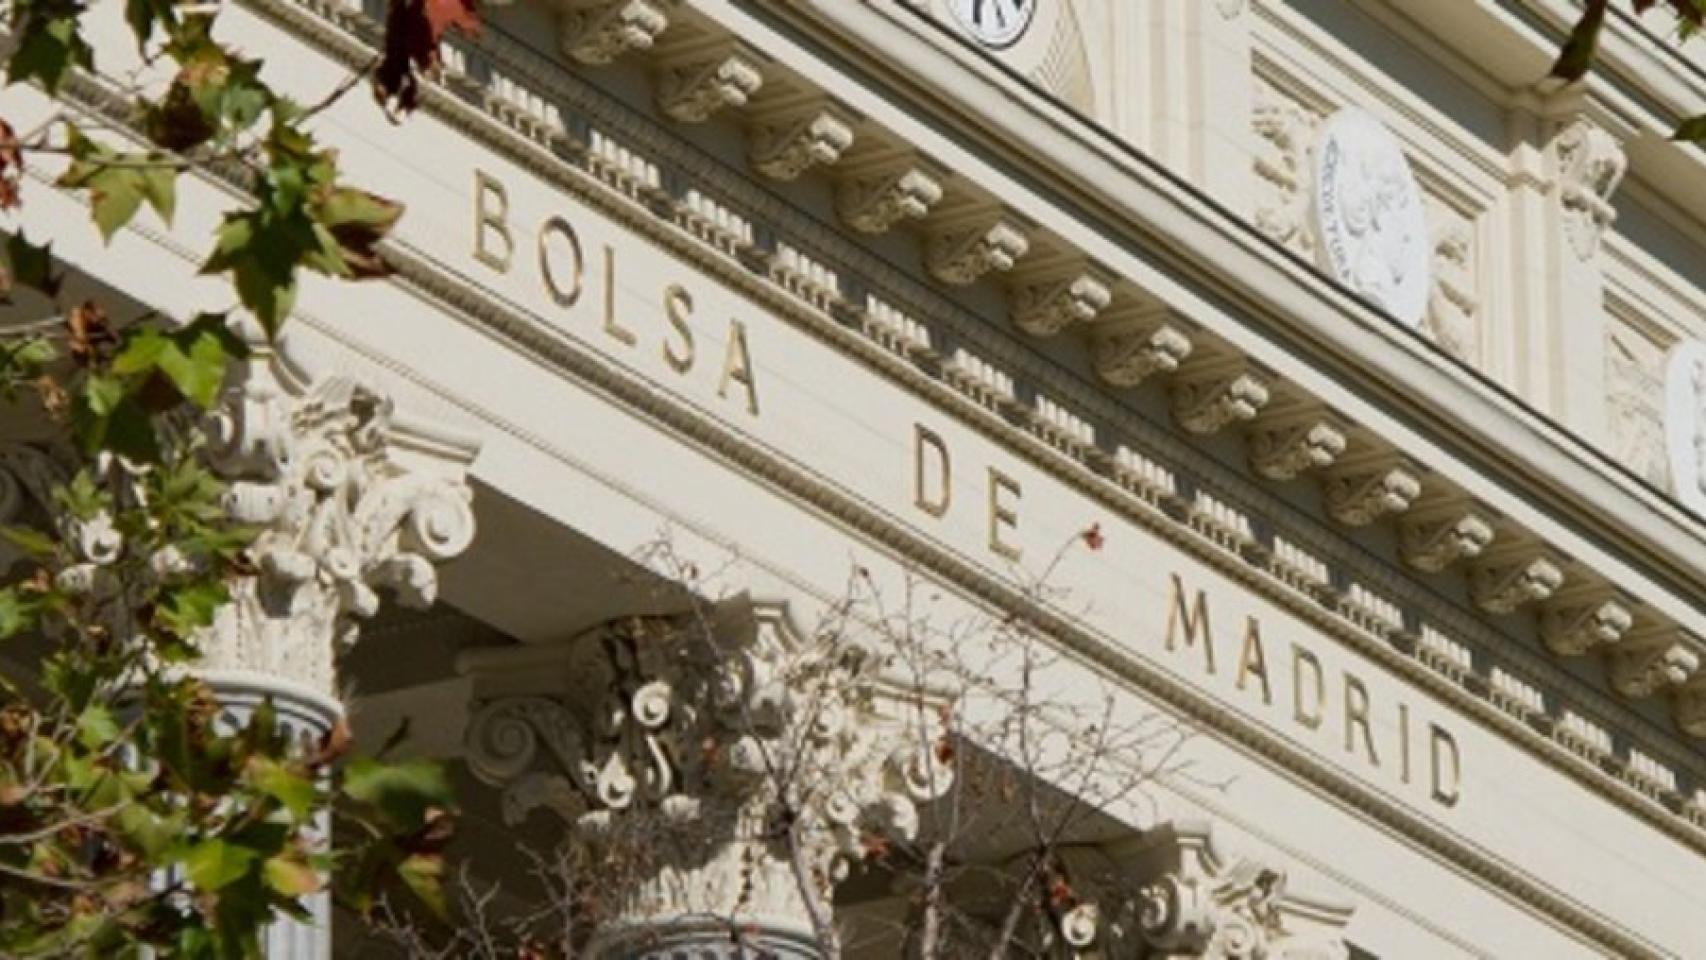 Detalle de la fachada en el Palacio de la Bolsa de Madrid.